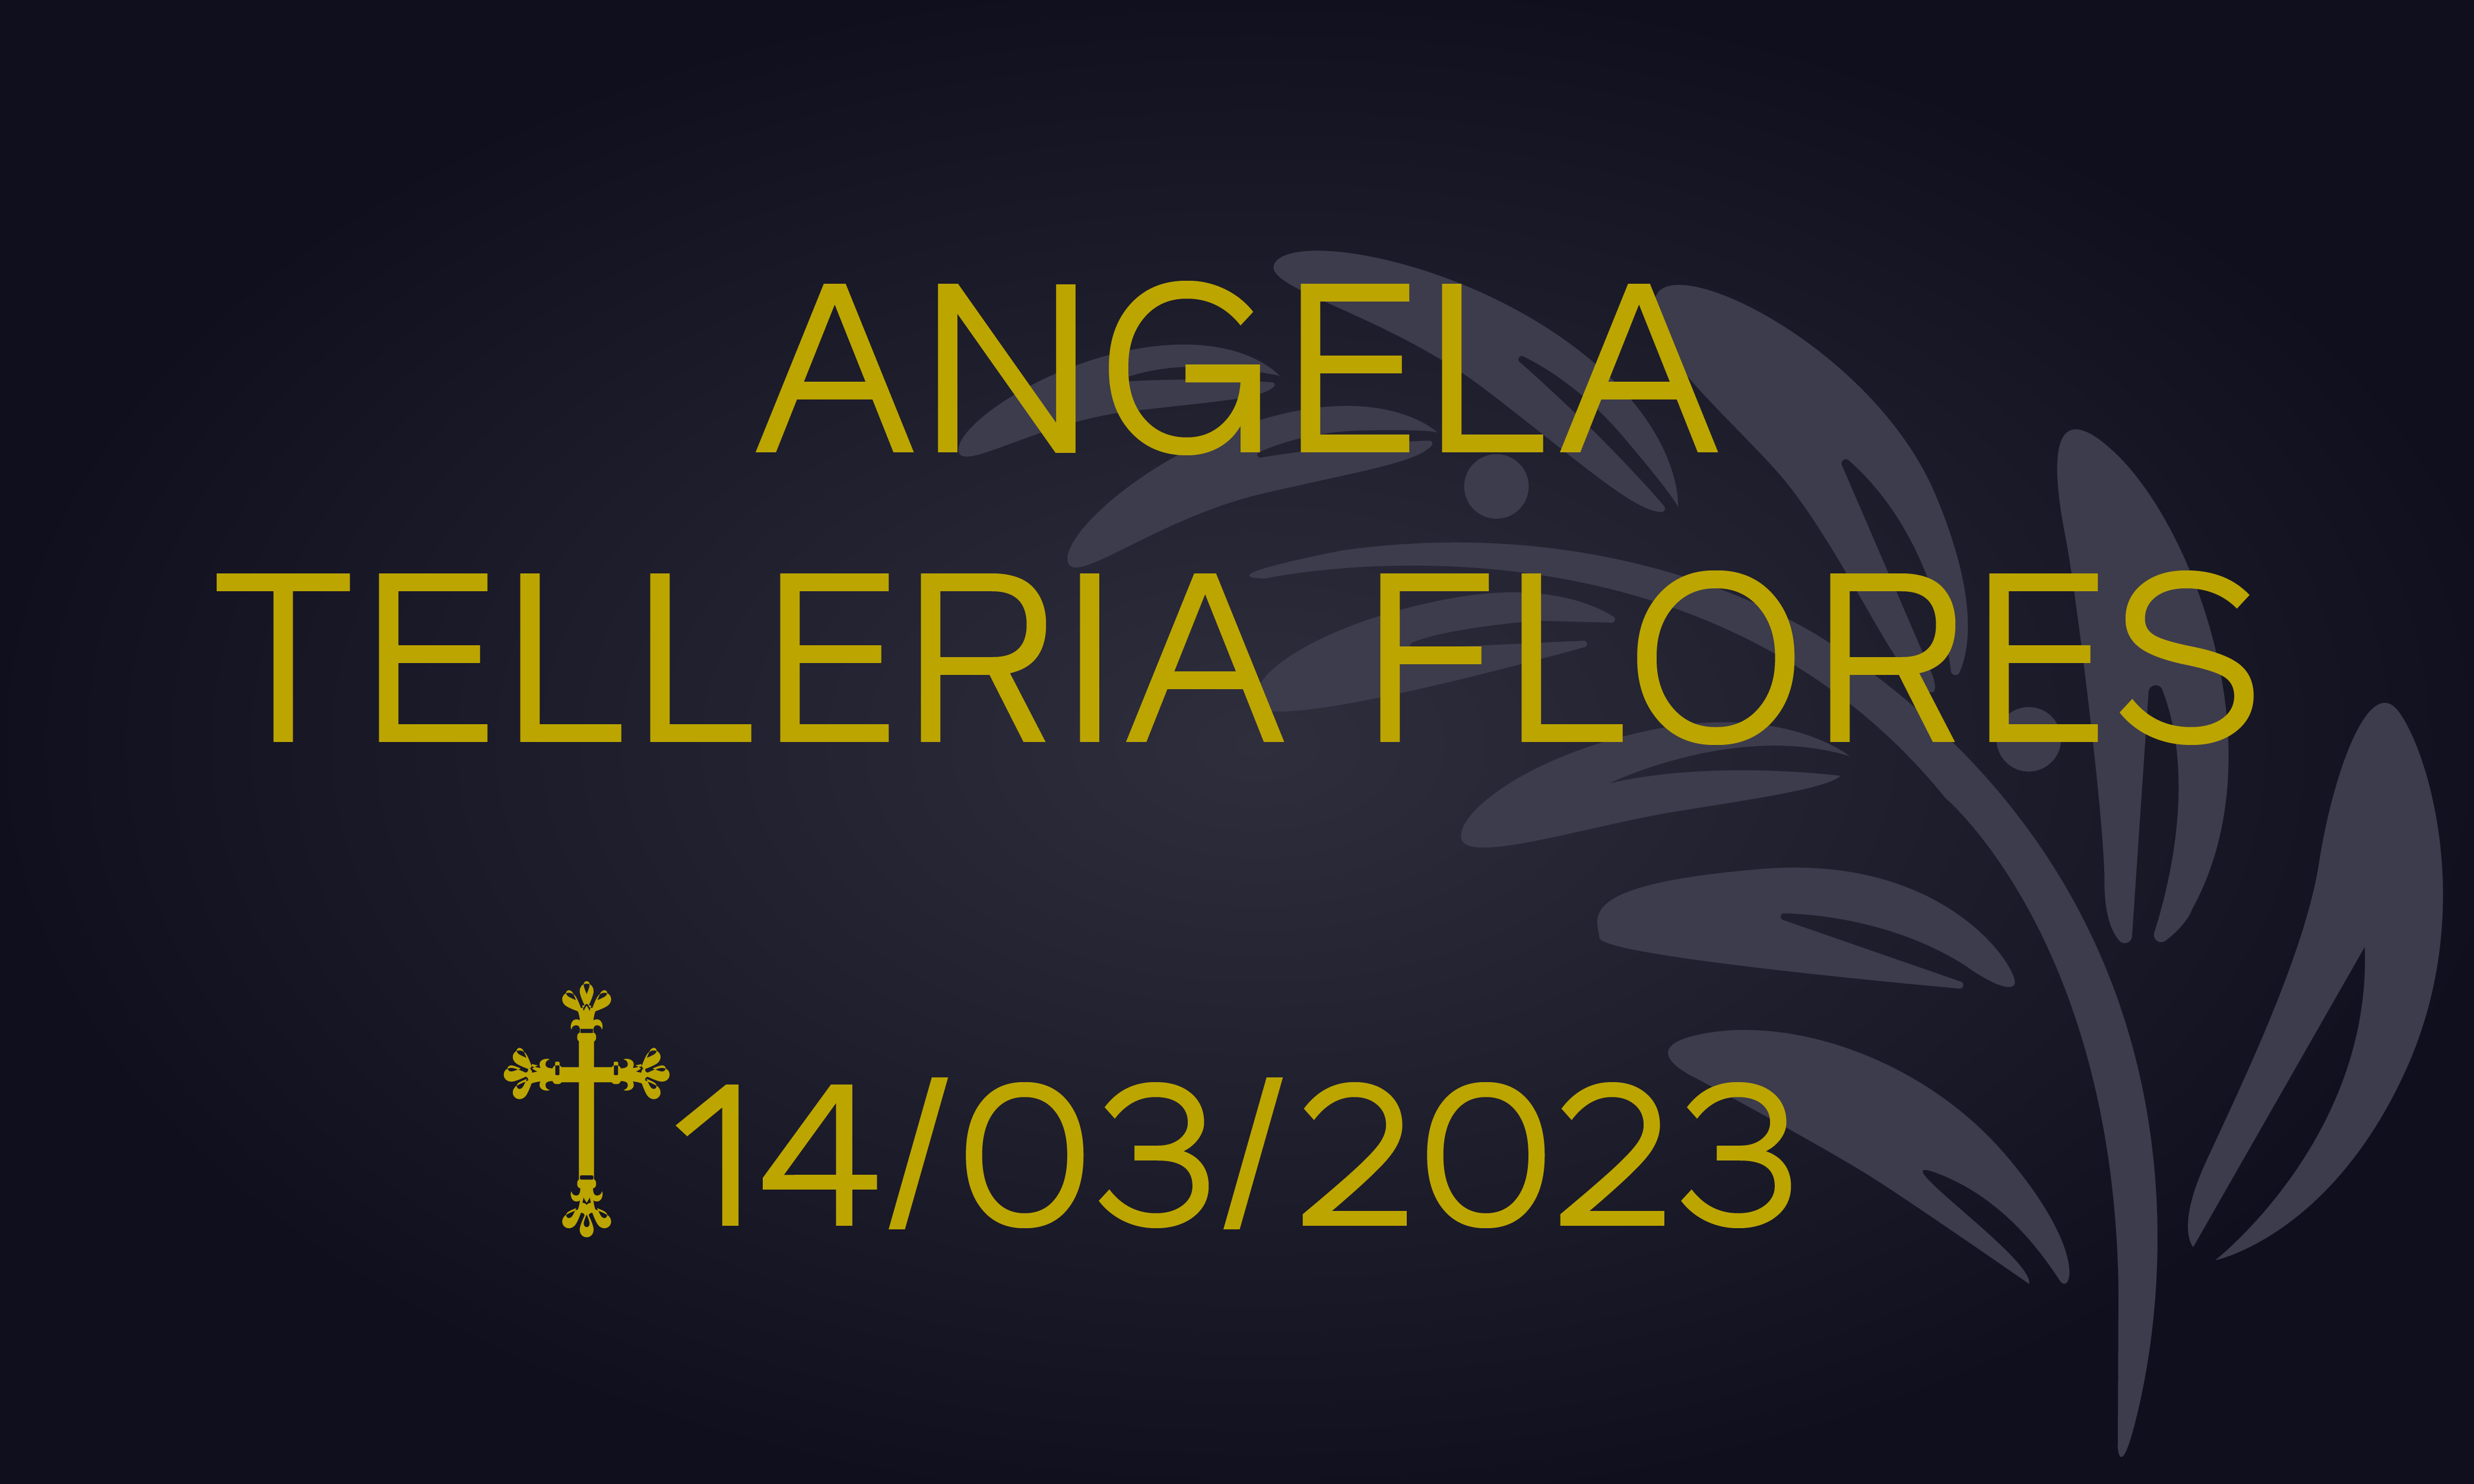 ANGELA TELLERIA FLORES – 14/03/2023